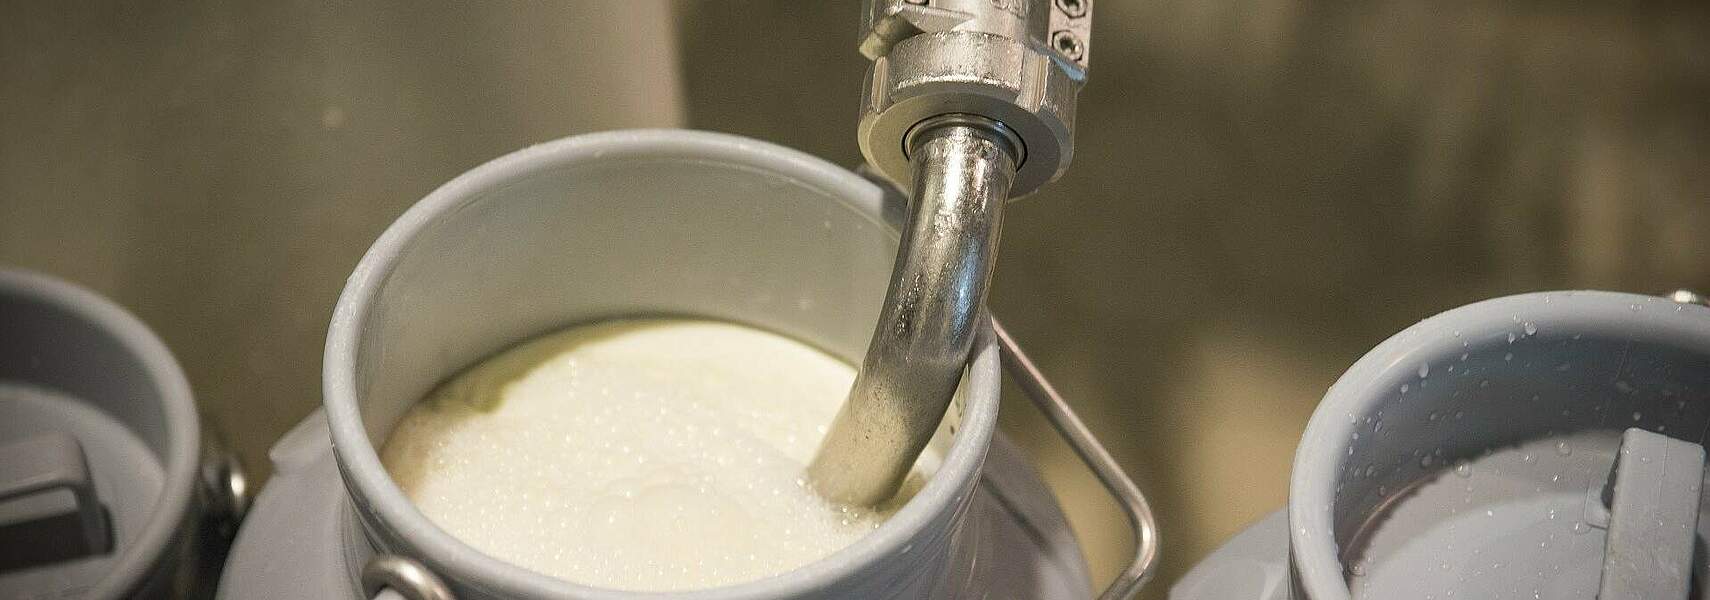 Milchpreisverhandlungen mit Aldi in der Kritik